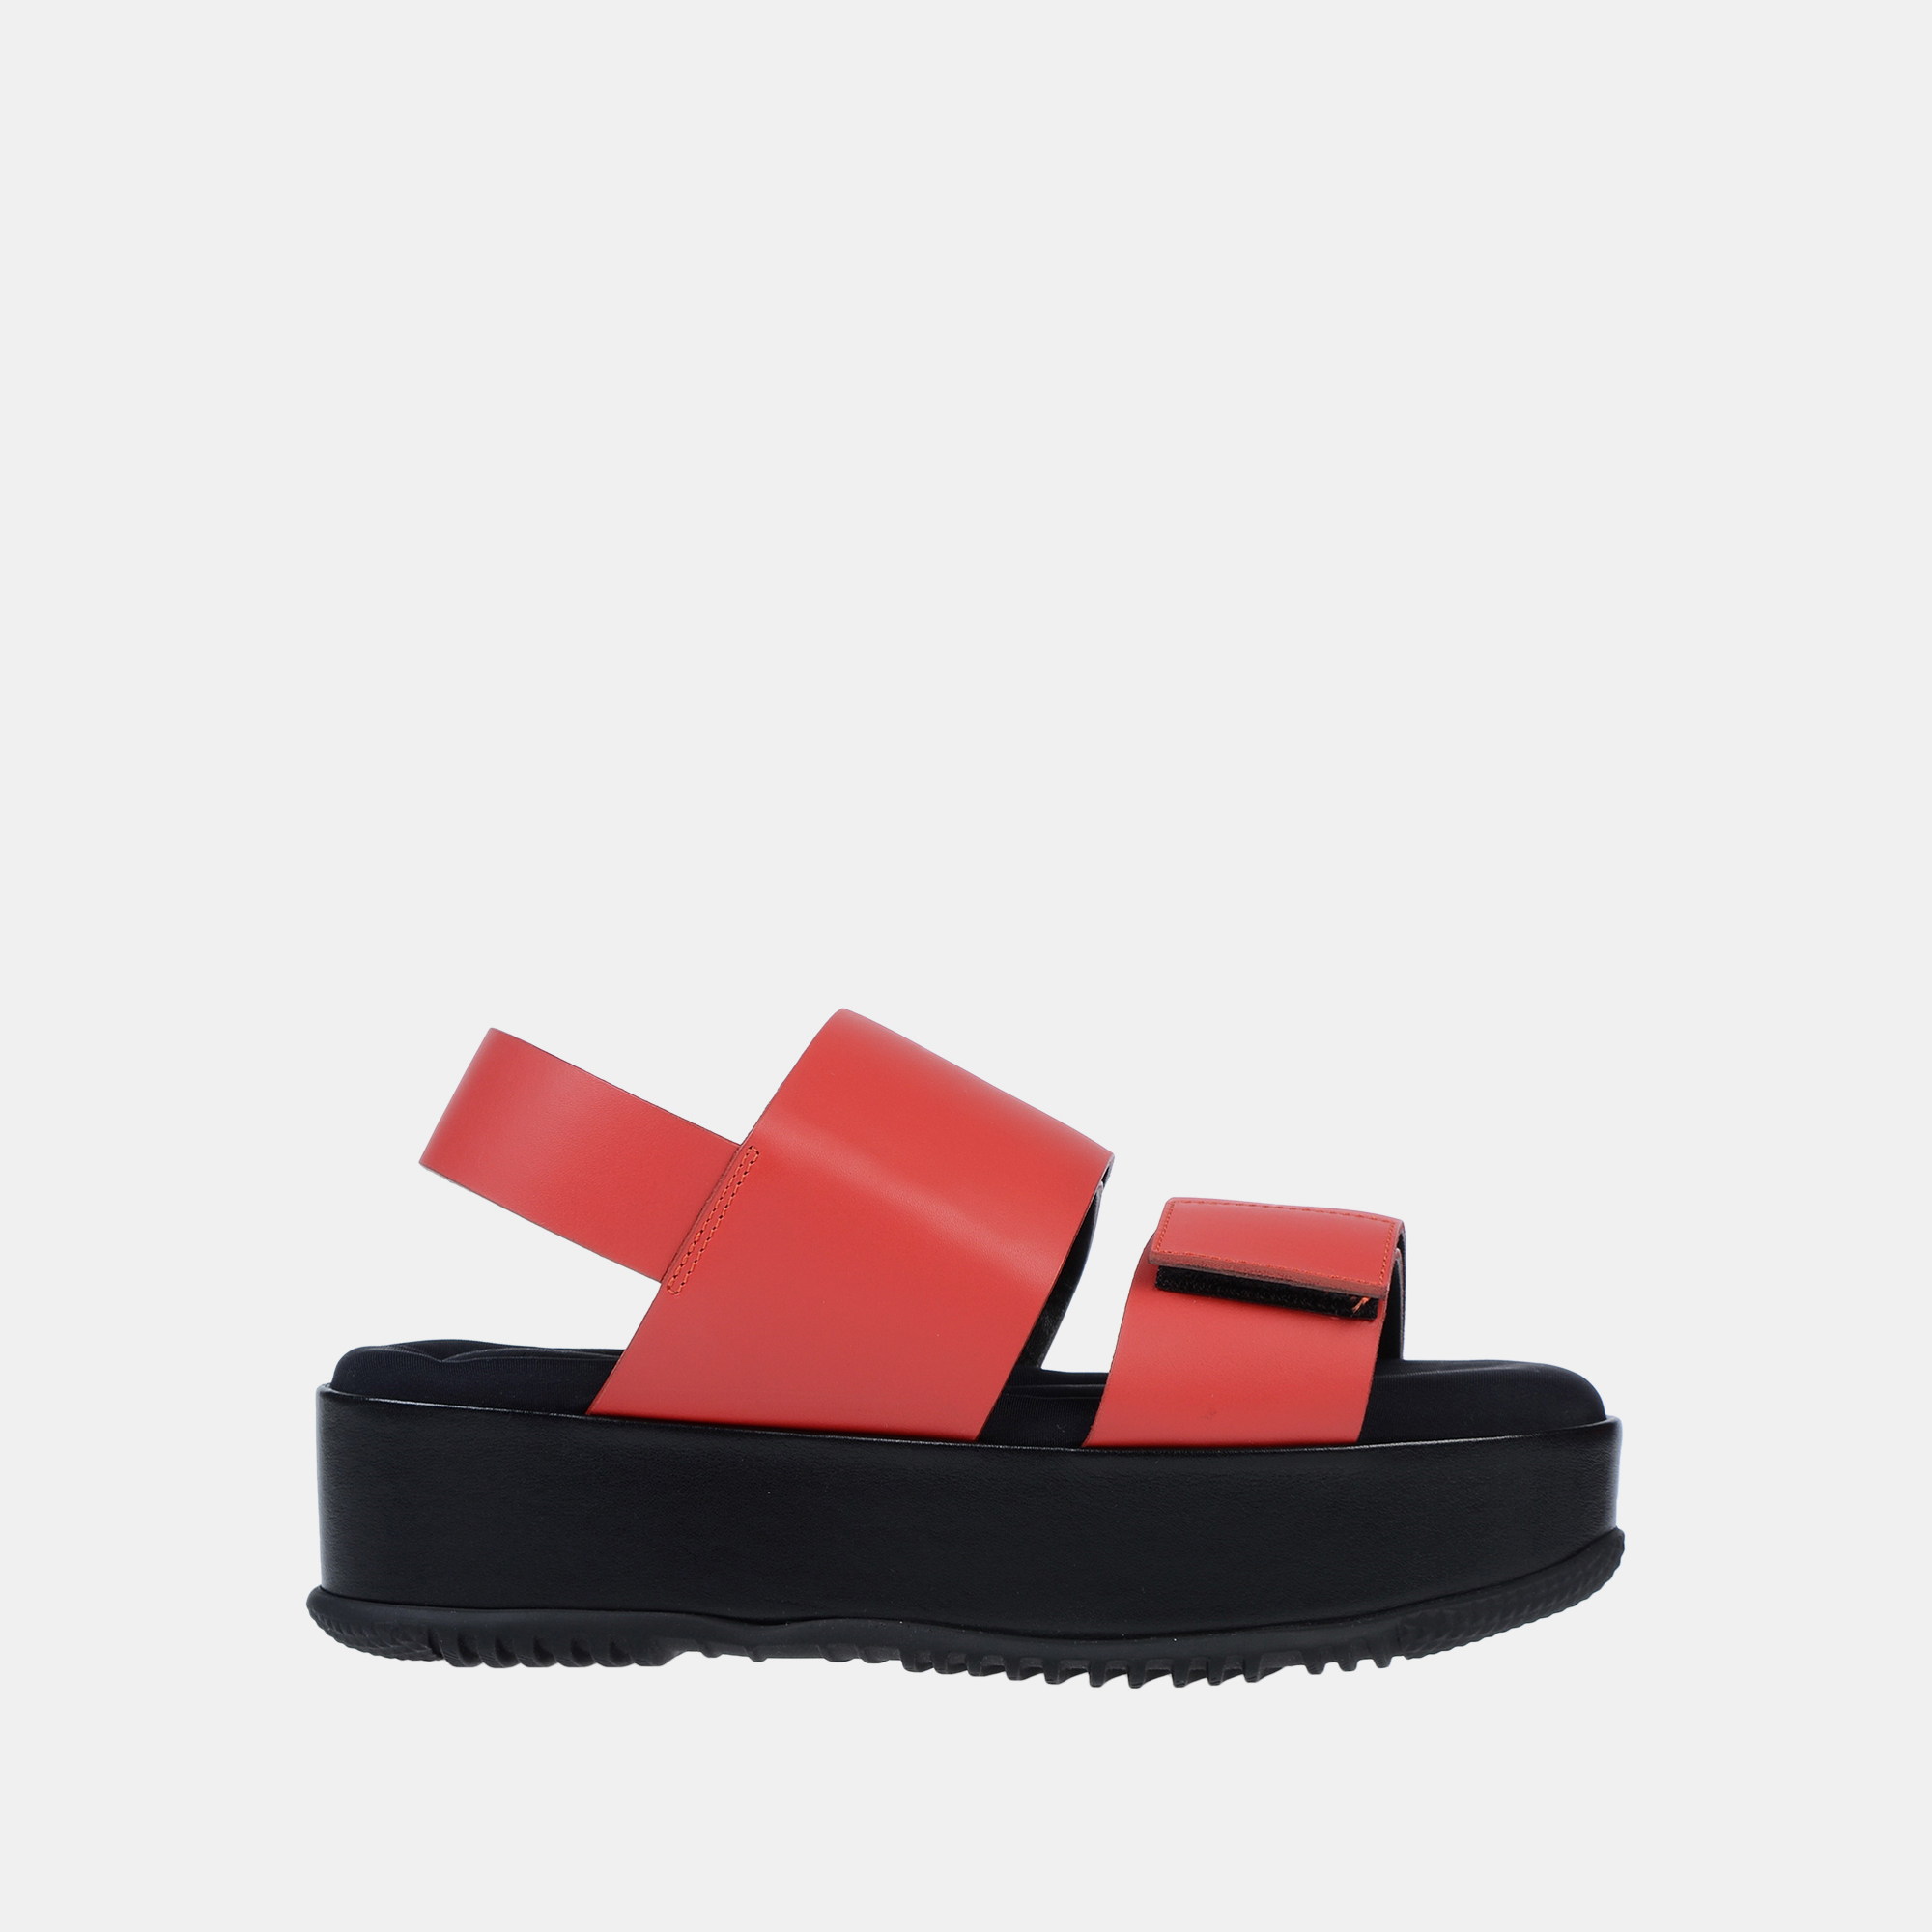 Marni red leather platform sandals 36